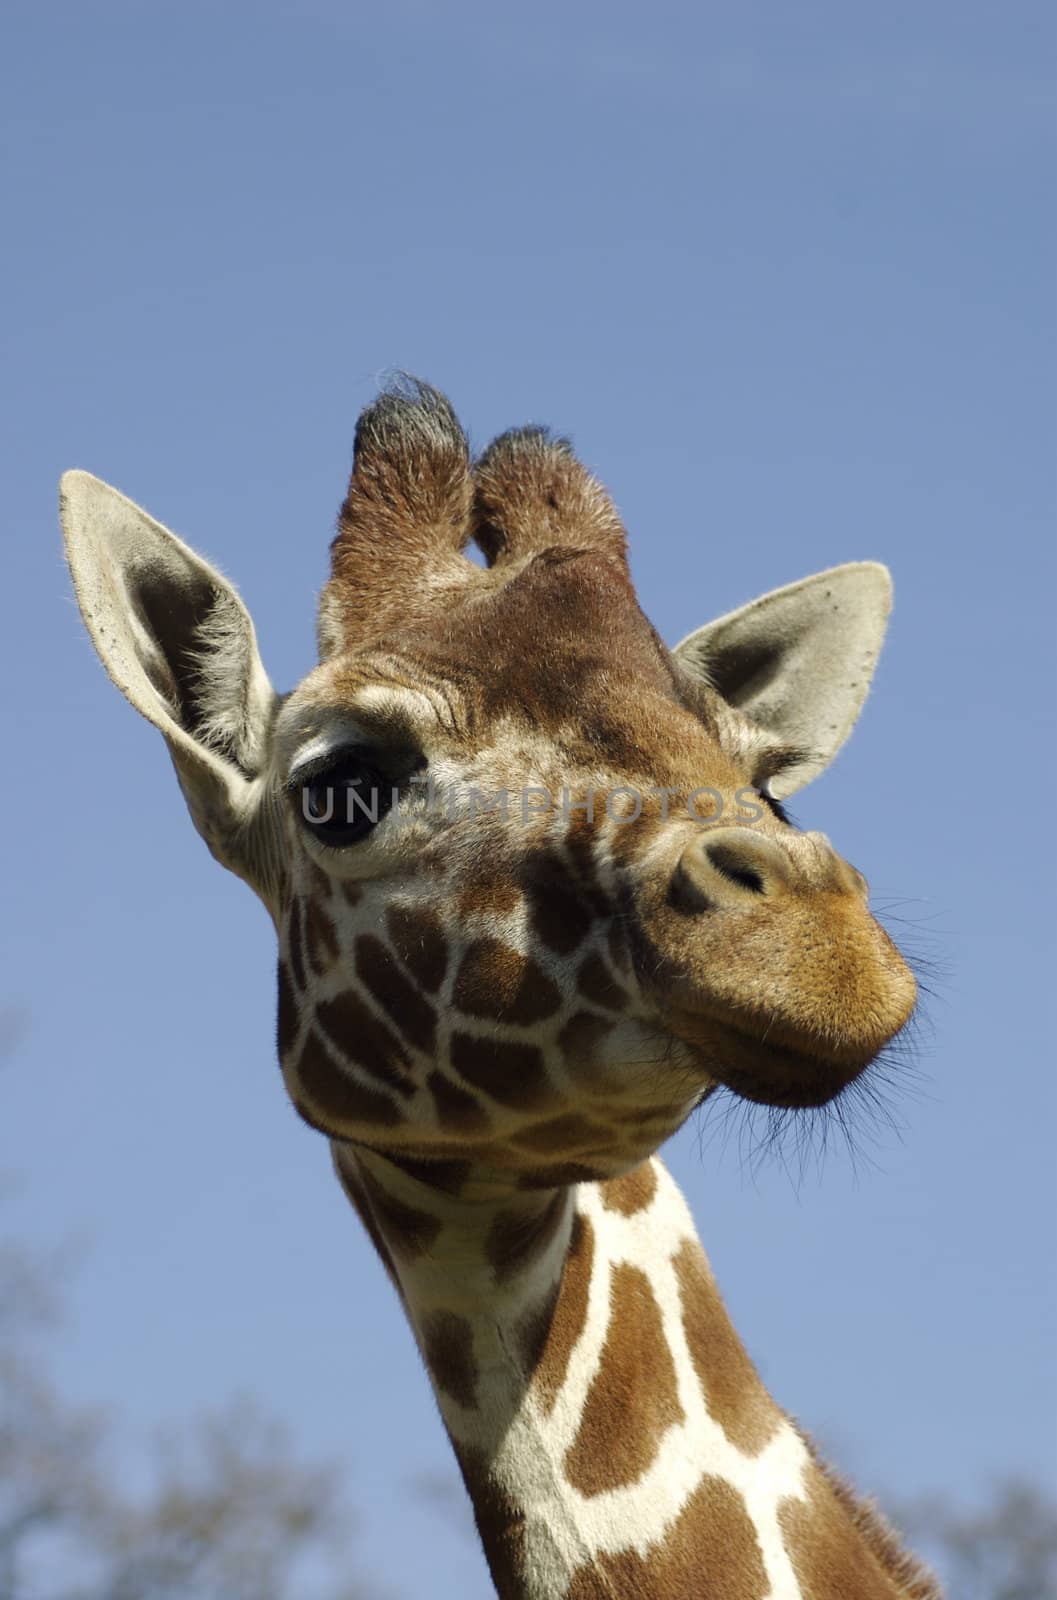 Giraffe Head & Neck by PrincessToula